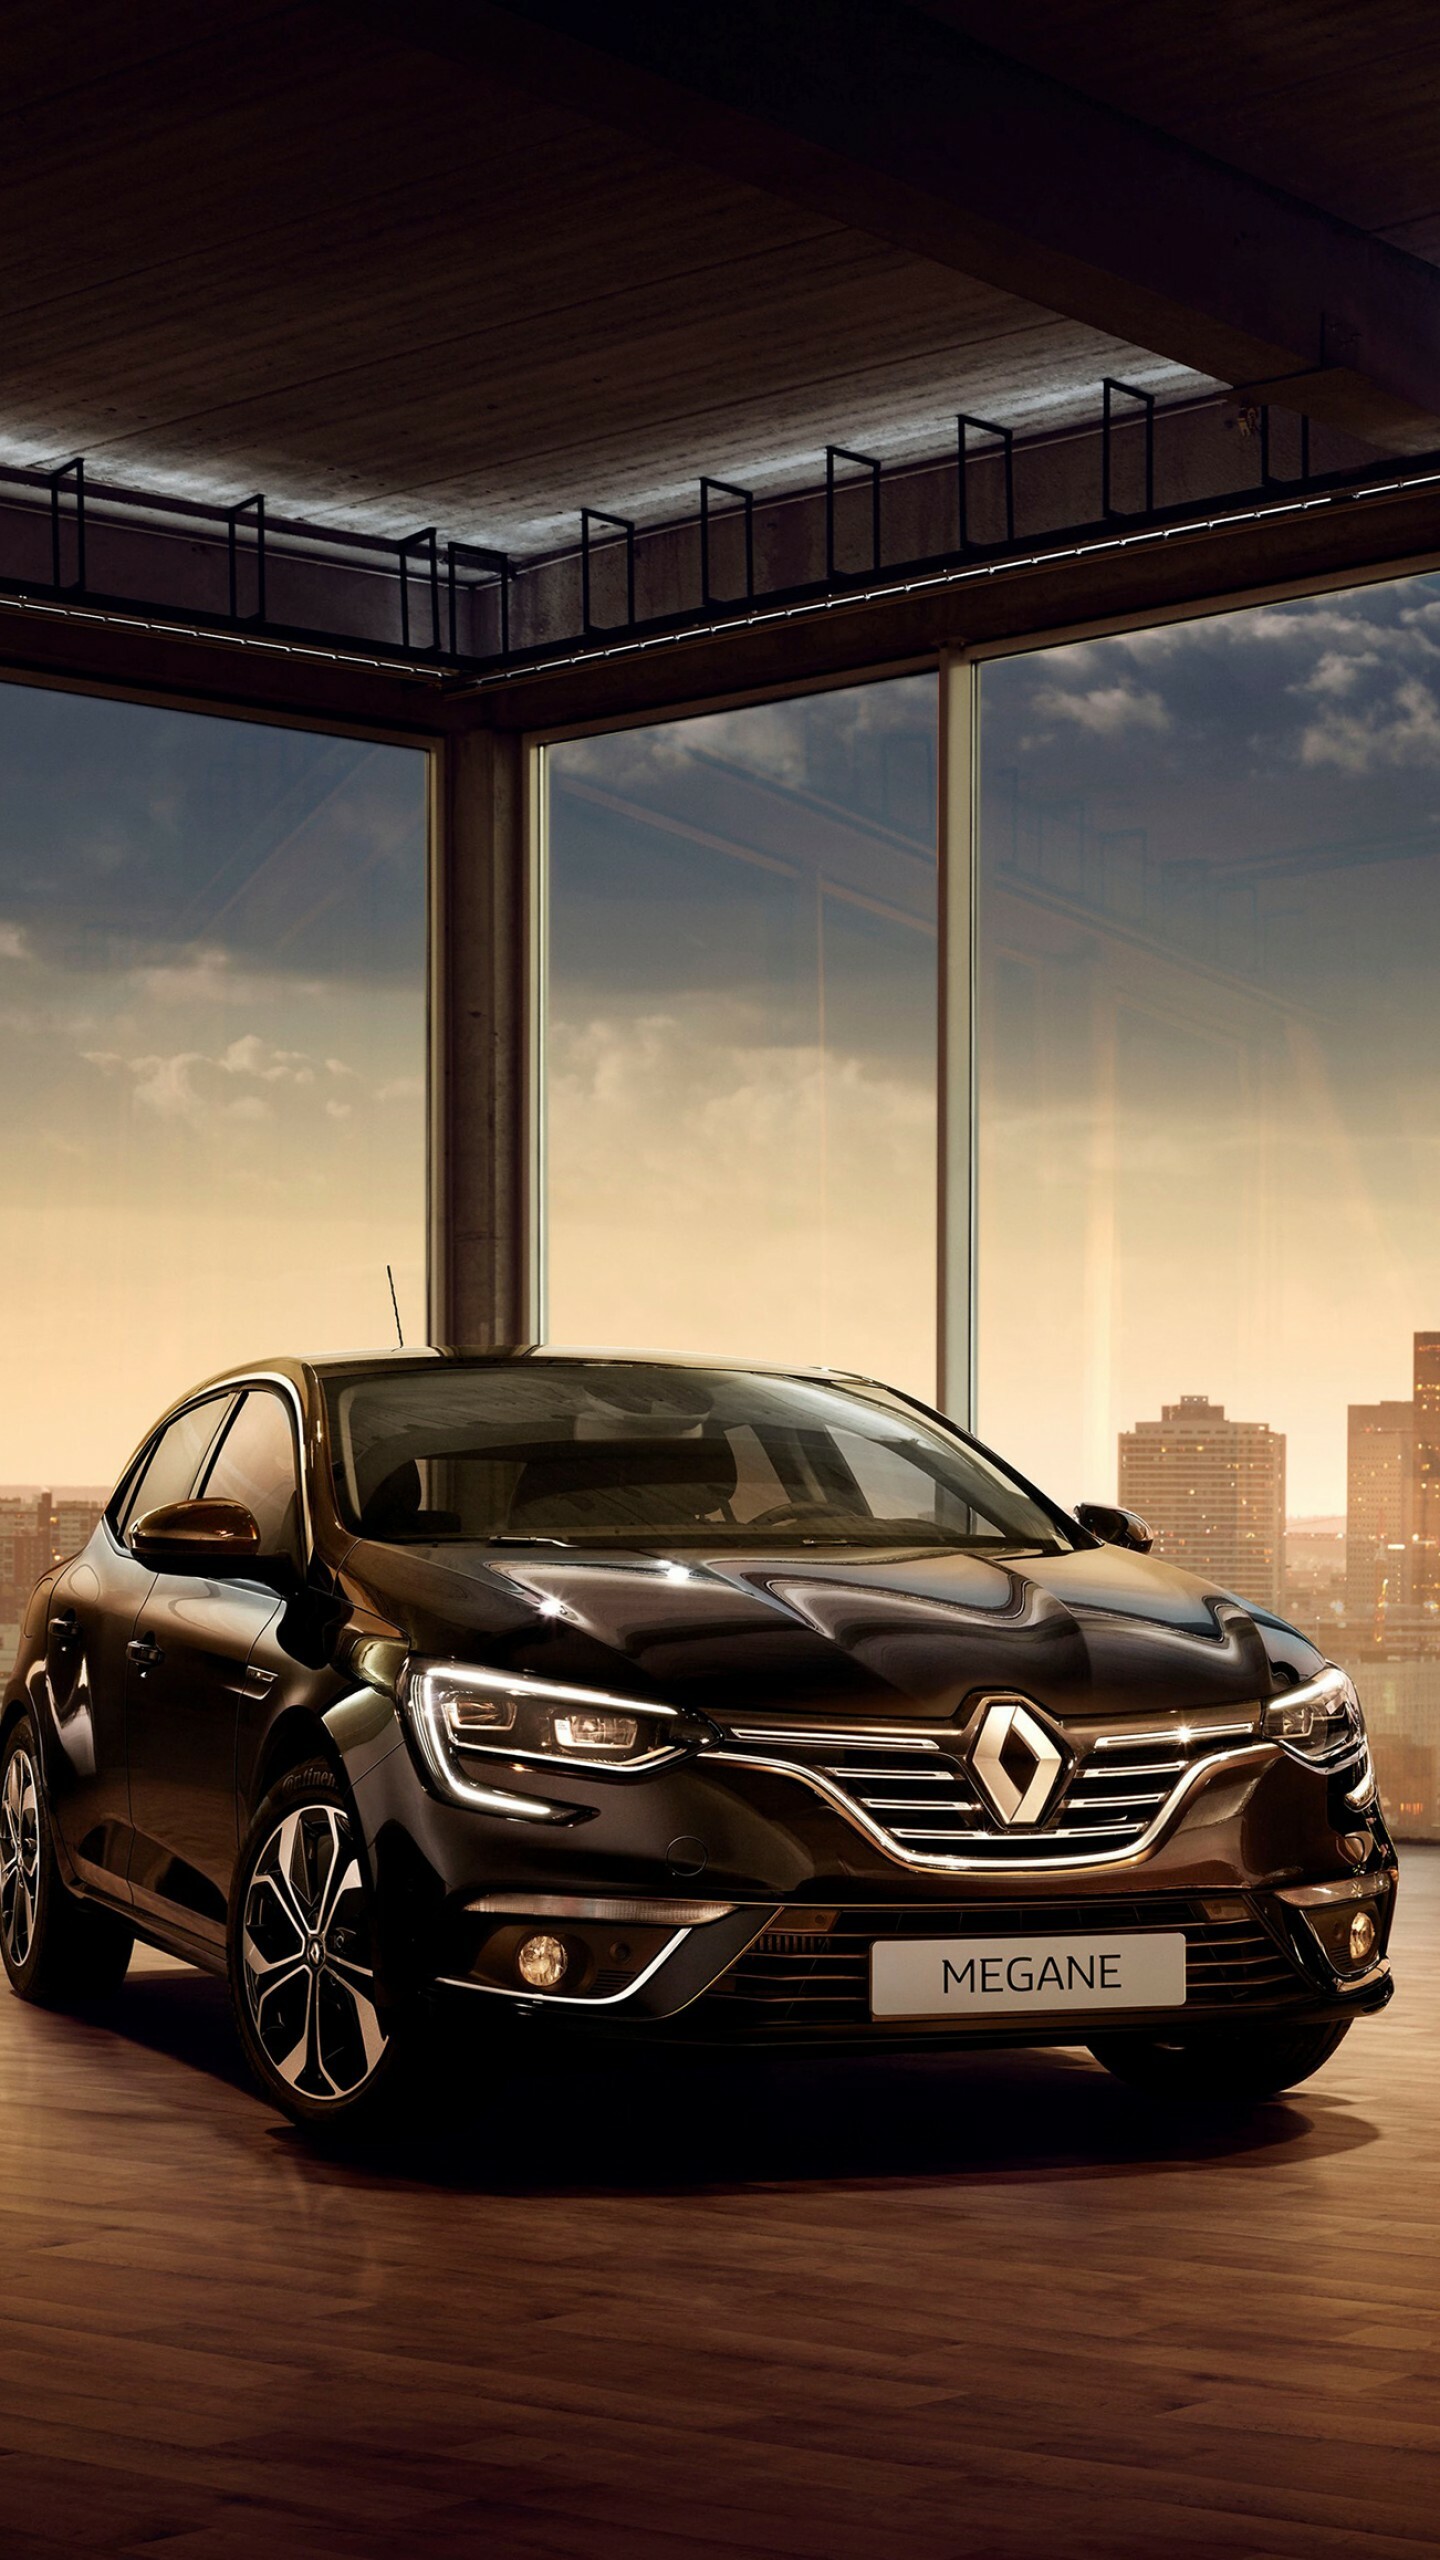 Renault: Megane, A long-established, superior car manufacturer, Headquartered in Boulogne-Billancourt. 1440x2560 HD Wallpaper.